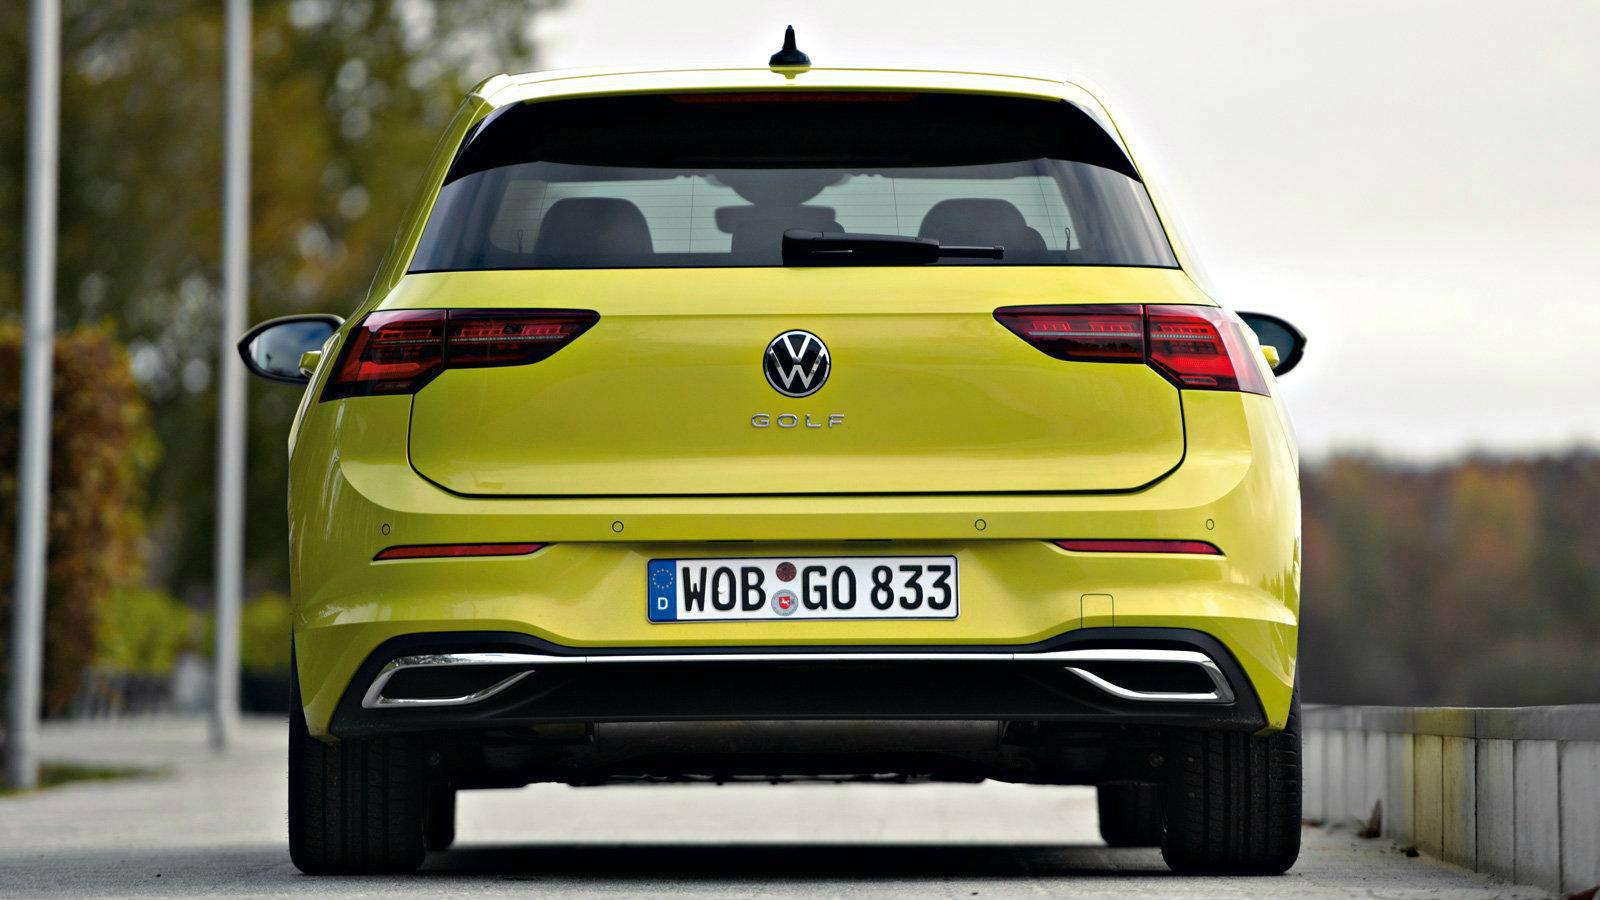 Πως υπερισχύει έναντι του ανταγωνισμού το νέο VW Golf?